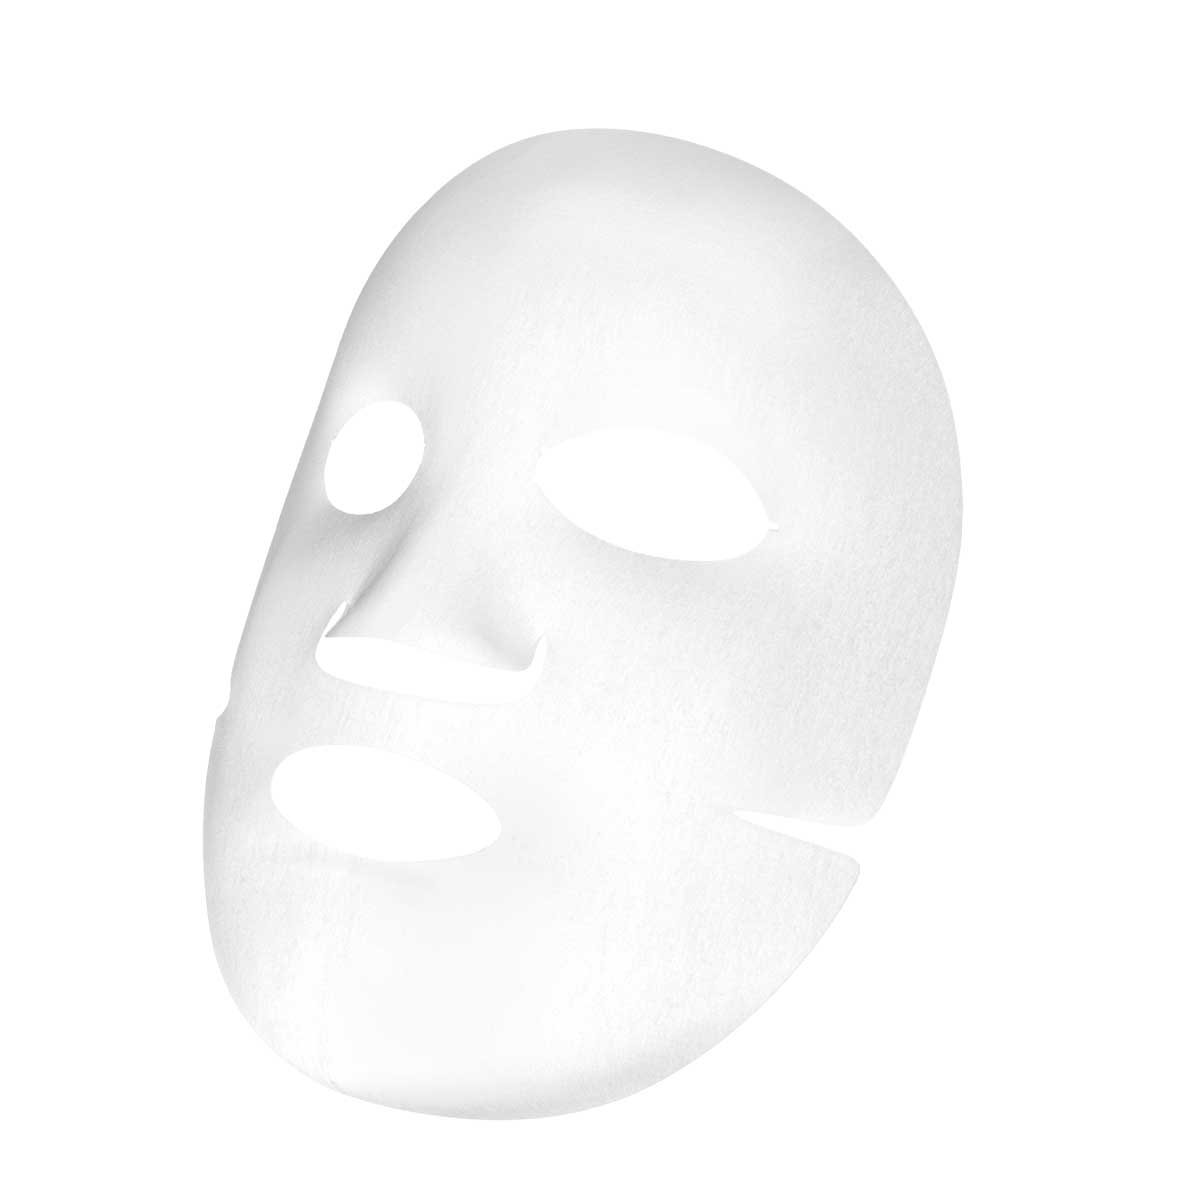 Cicaplast B5 sheet mask packshot